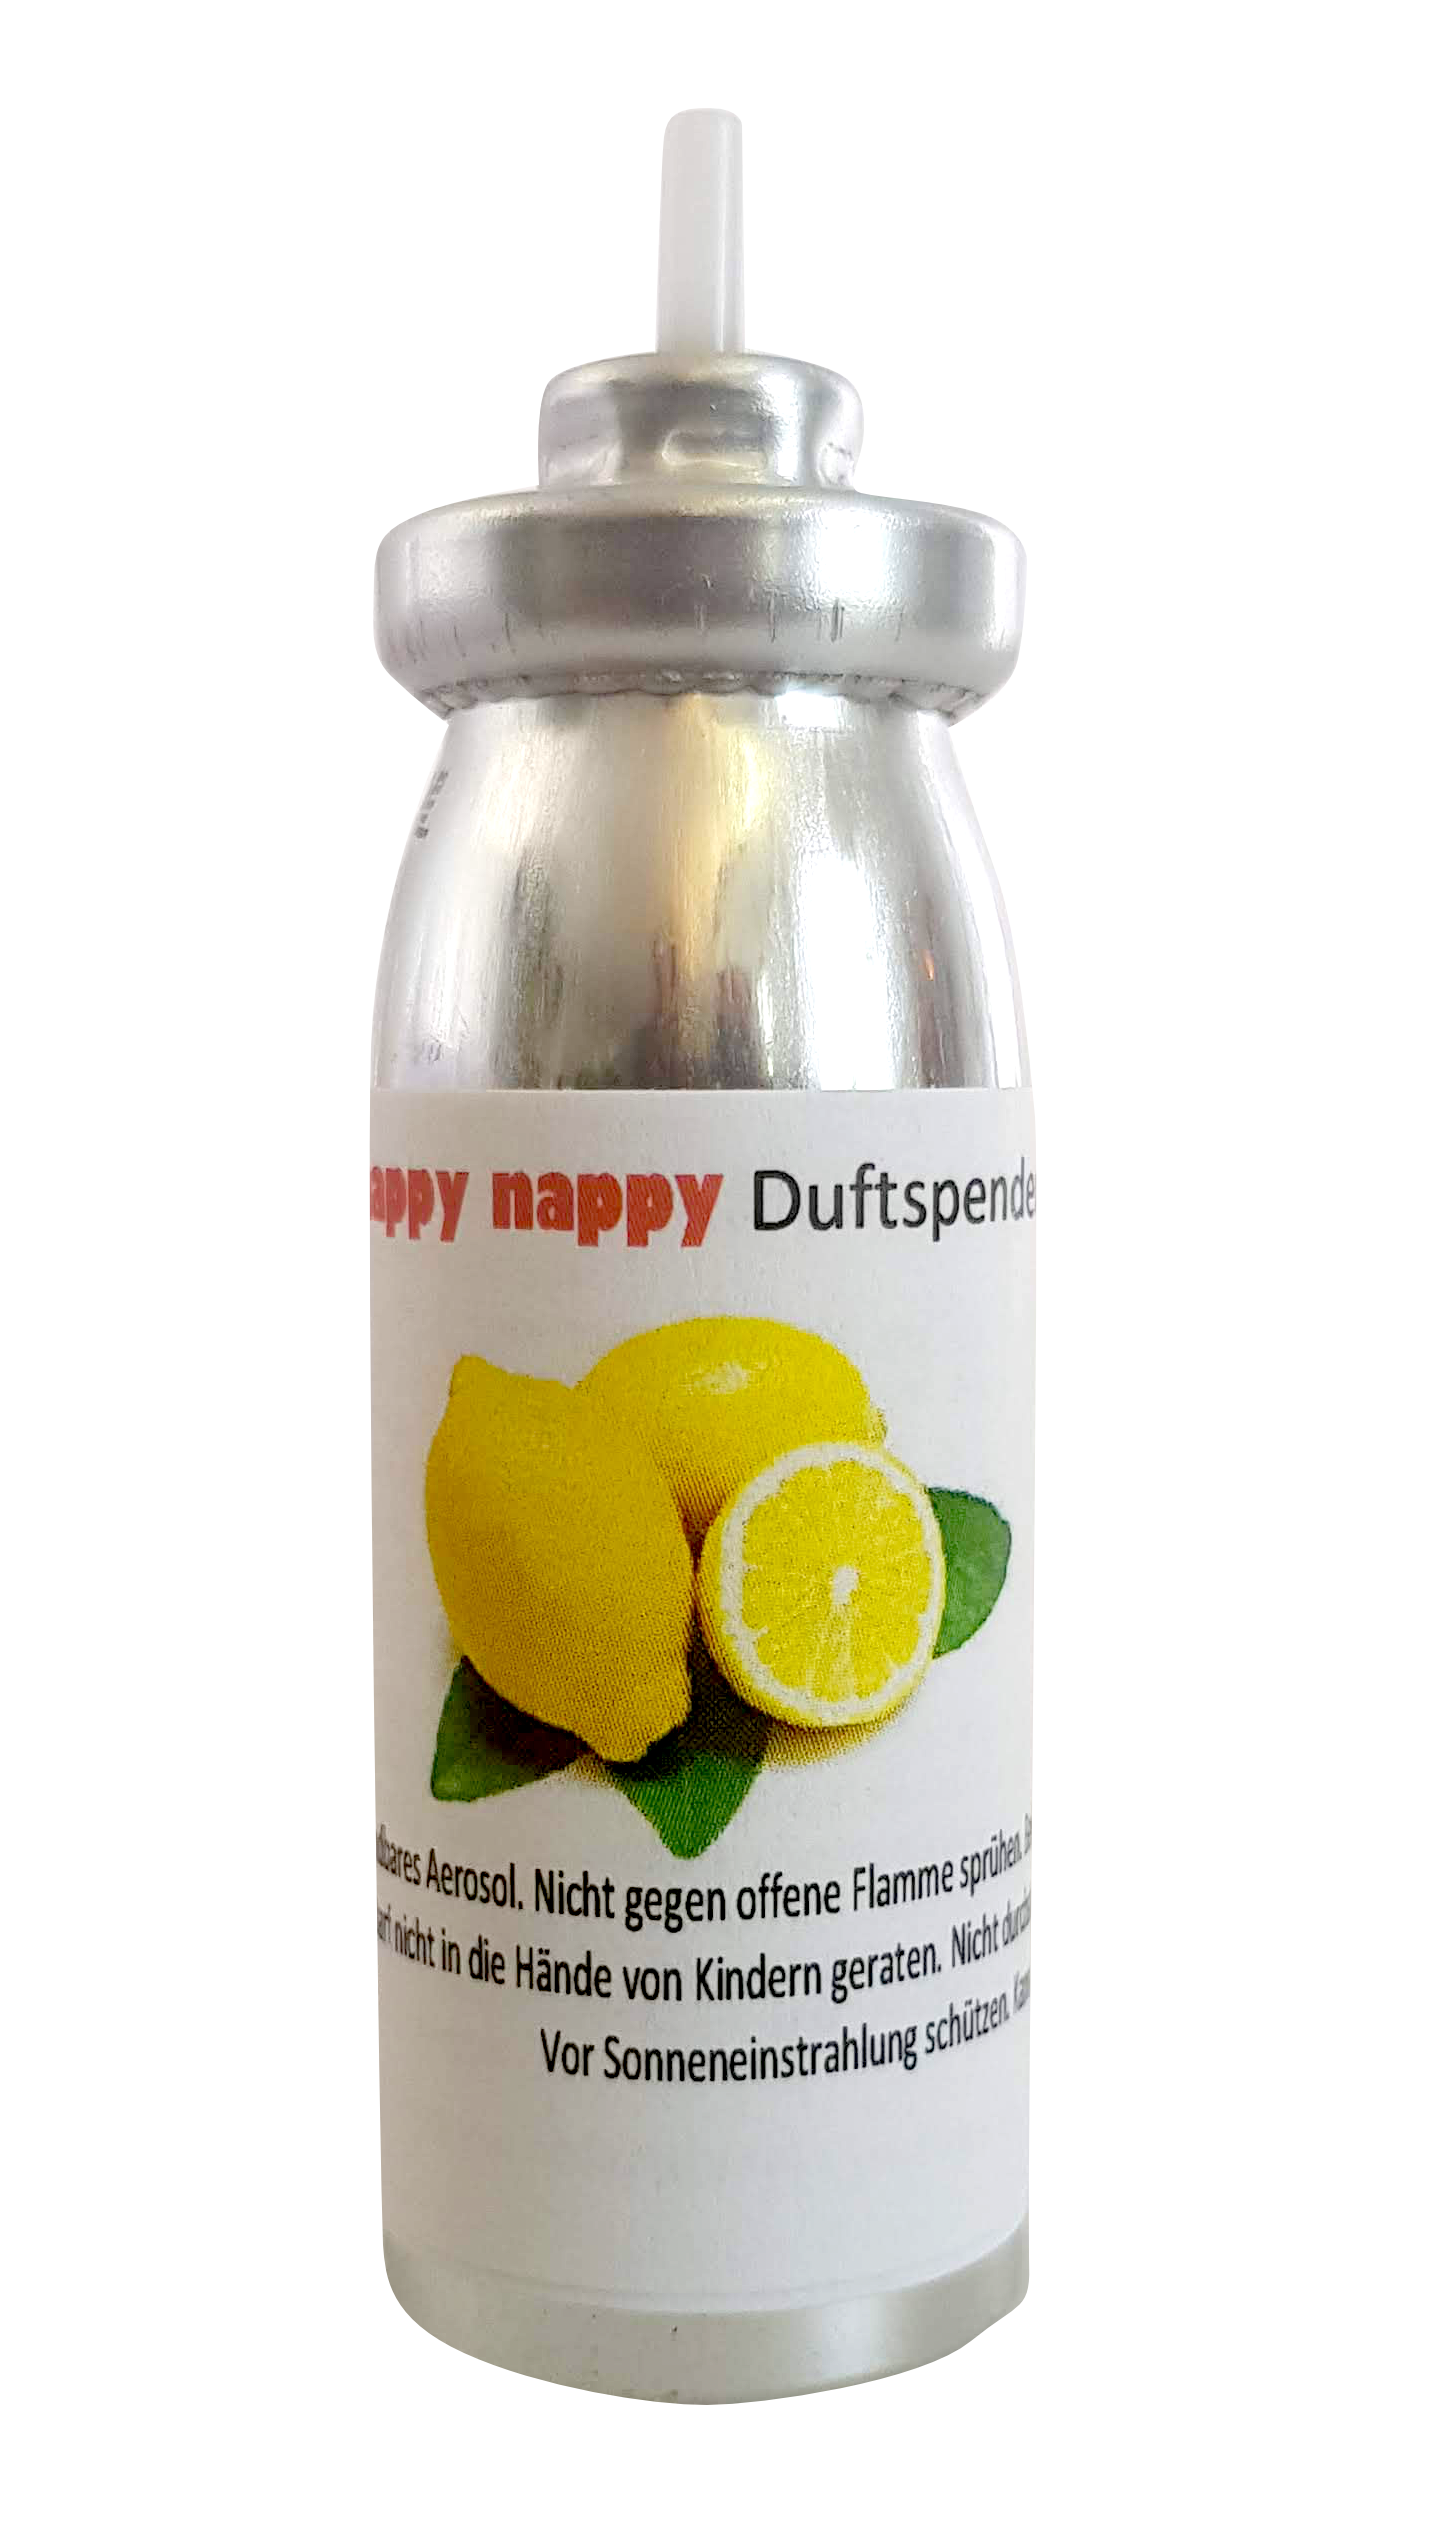 Spray désodorisant happy nappy